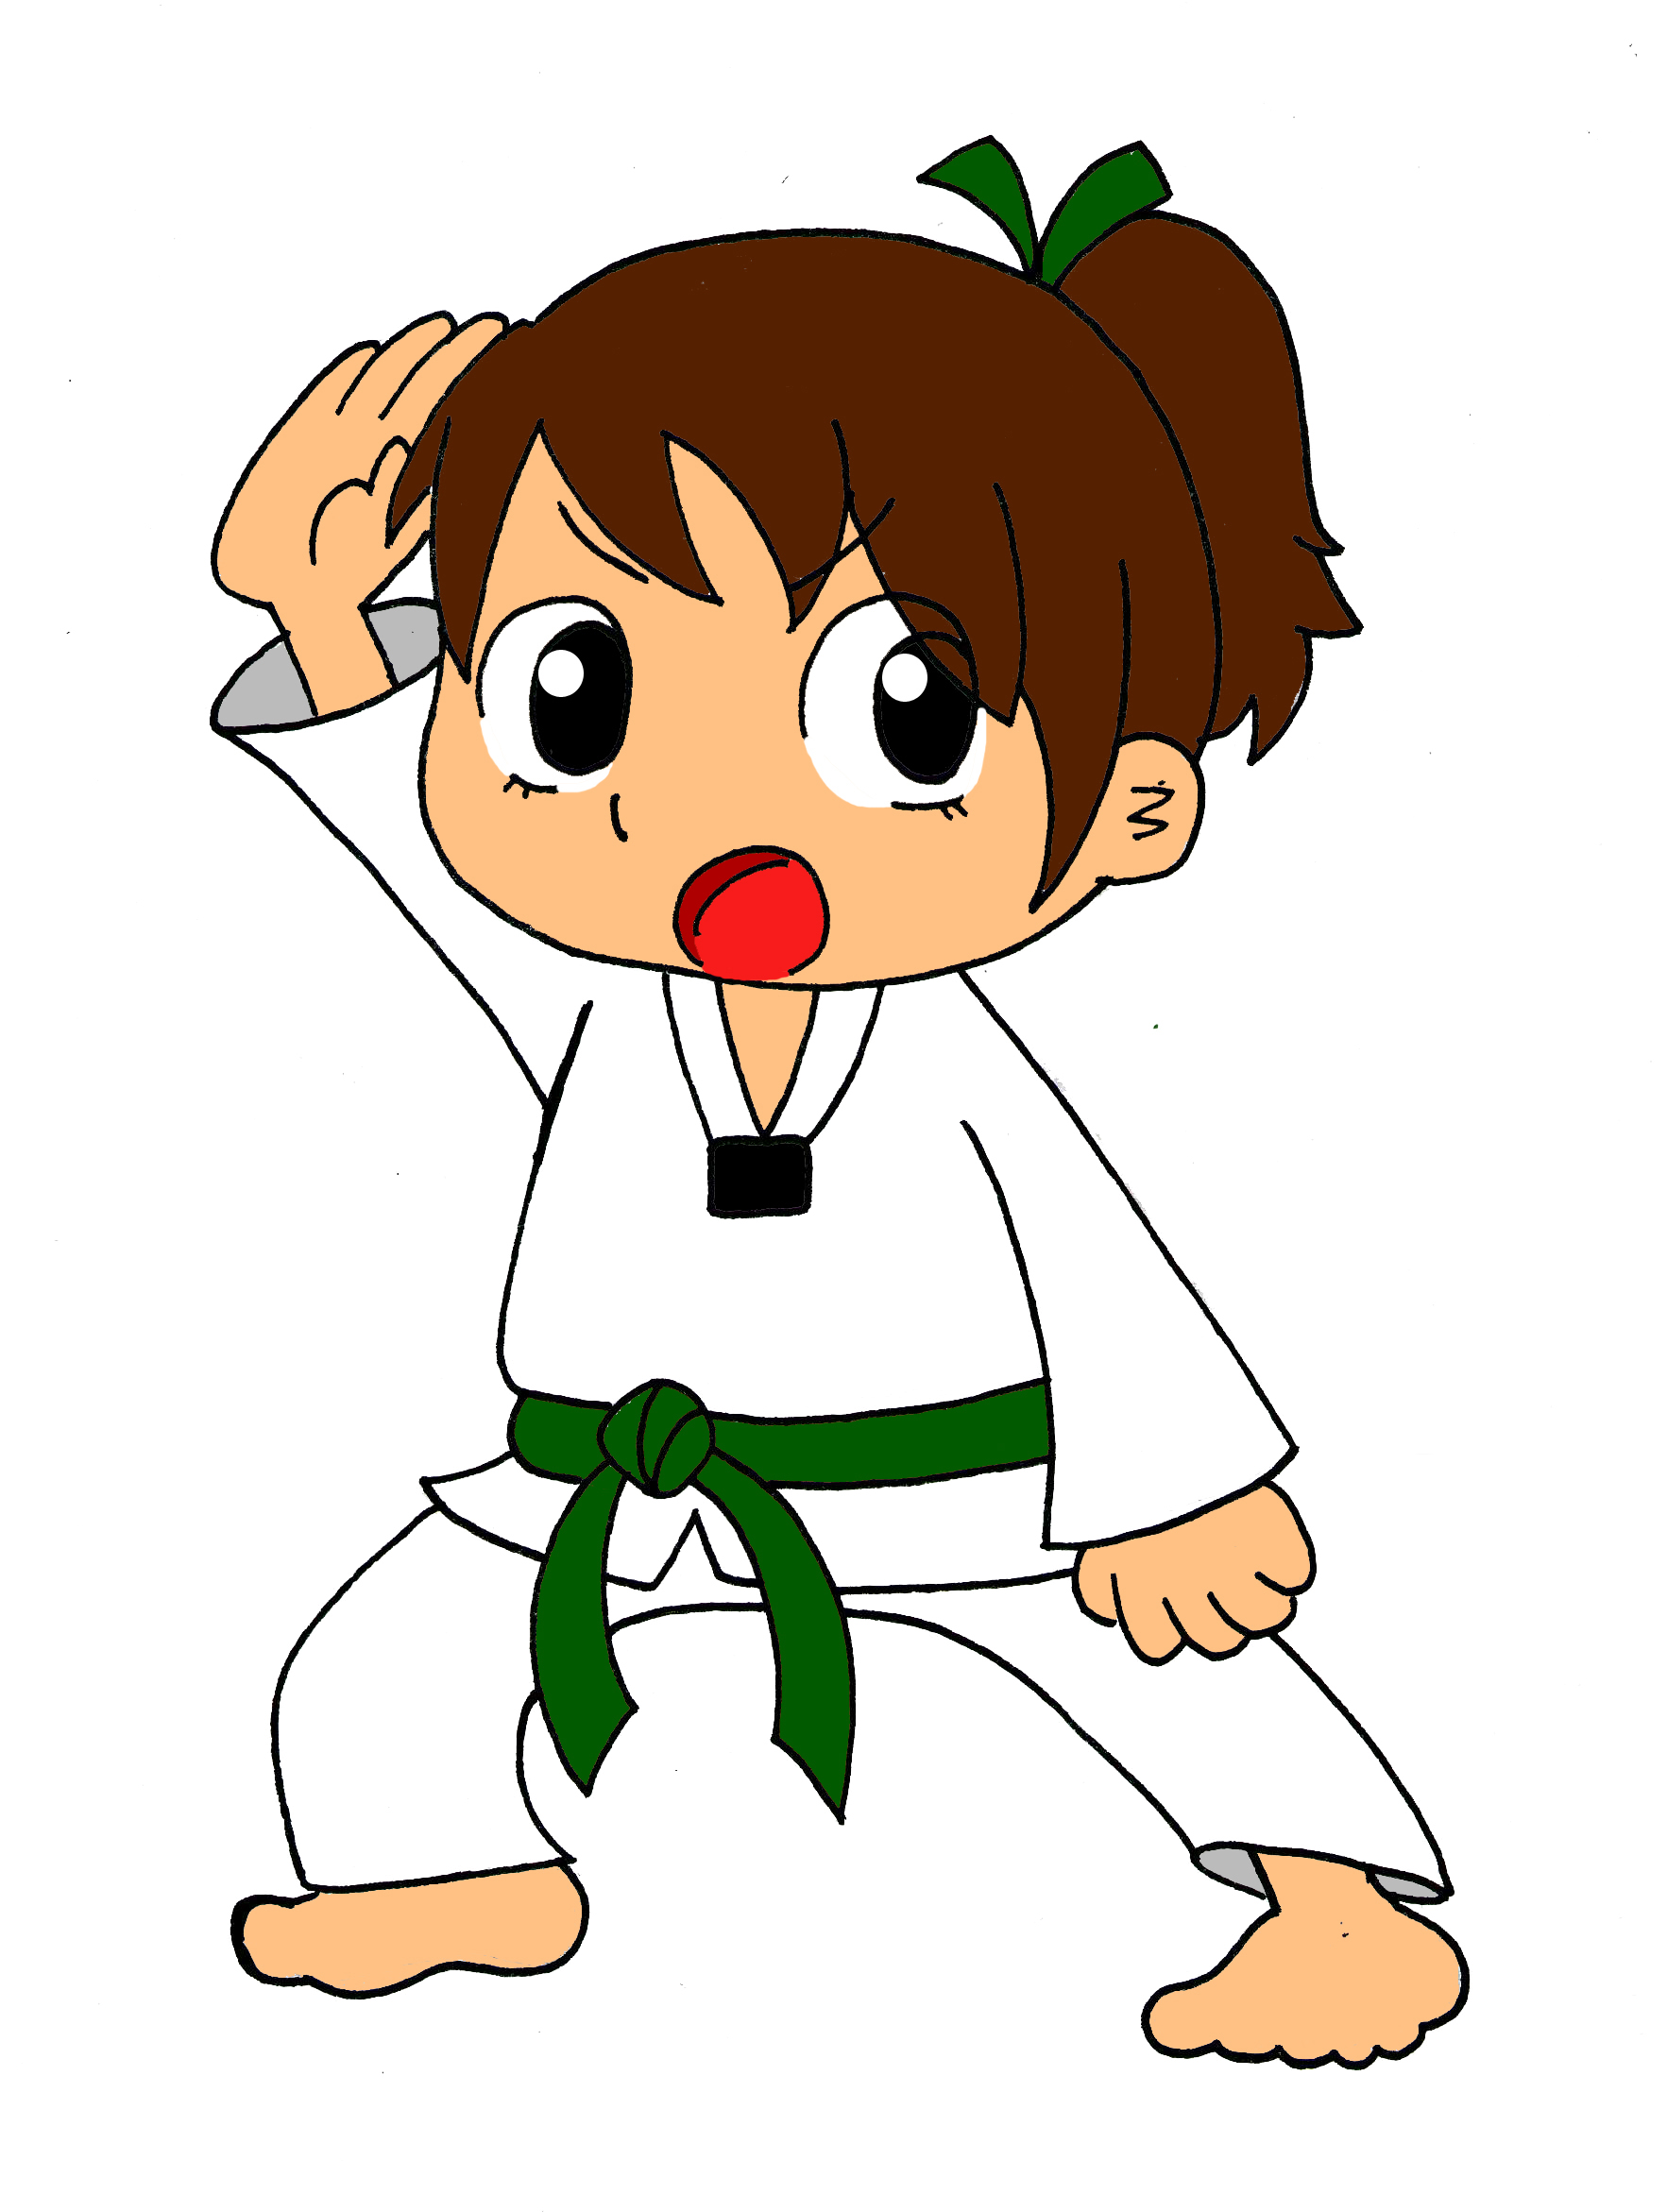 Masters of Taekwondo